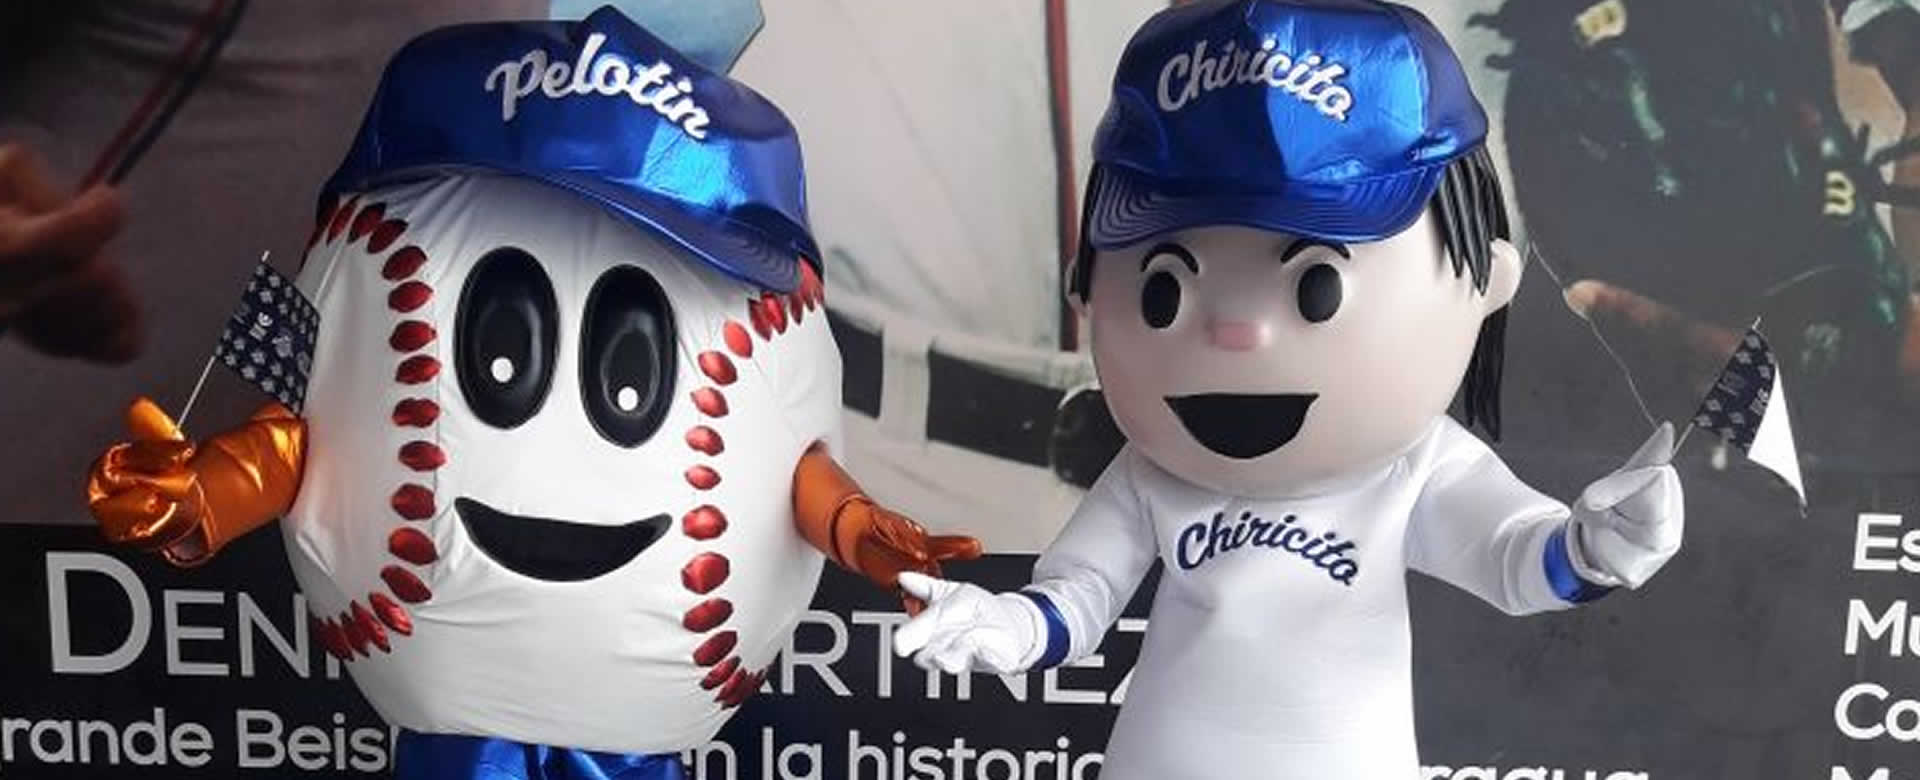 Chiricito y Pelotin las mascotas oficiales de la serie Internacional de Béisbol